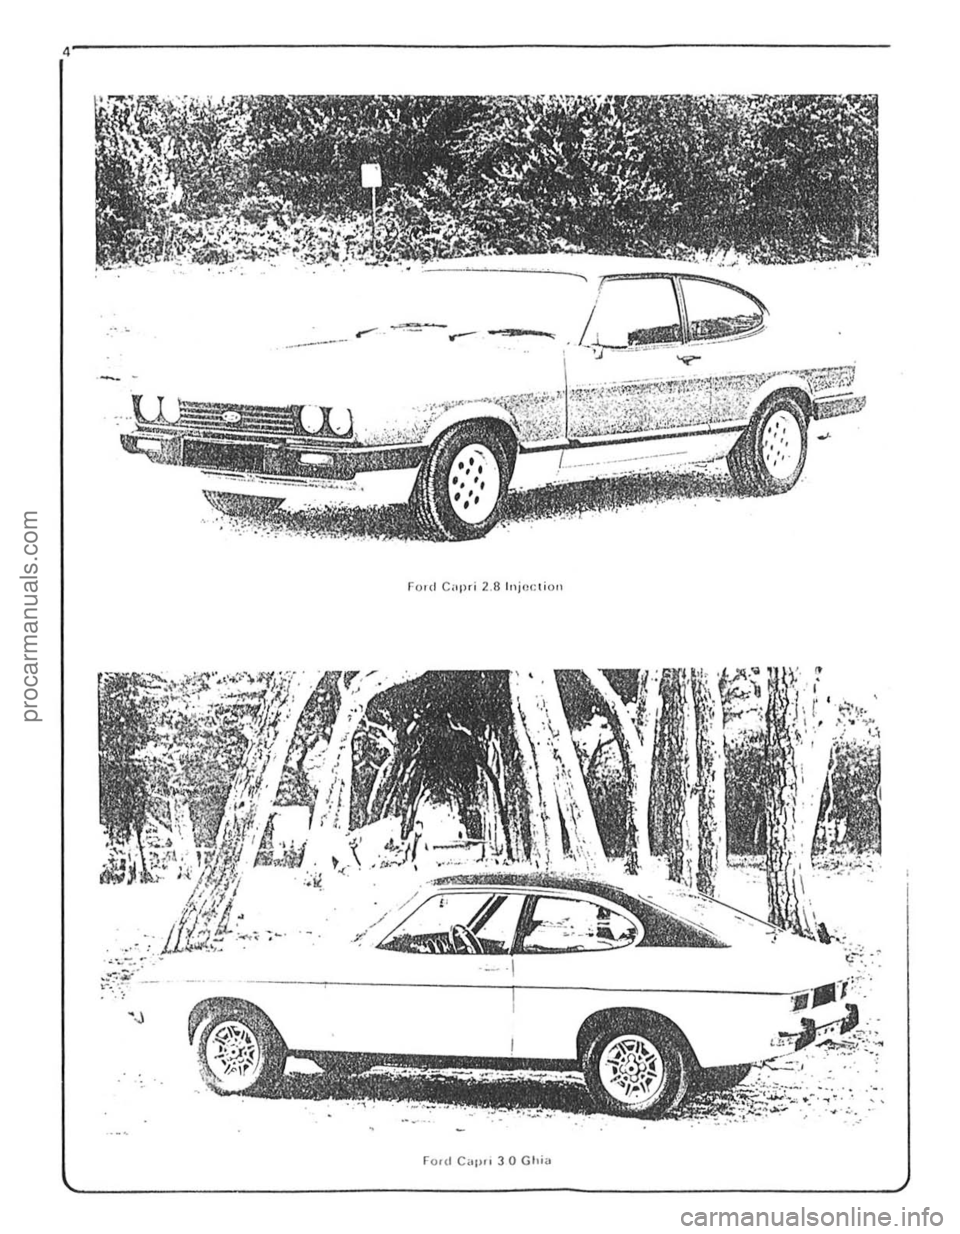 FORD CAPRI 1974  Workshop Manual \, 
Ford Capri 2.8 luj(luioli 
. JU .... ~ ..    .. 
, .. ""! • •    " ..... .:.. . . . ~. 
Foul C,tl" 3 0 Glli" 
procarmanuals.com 